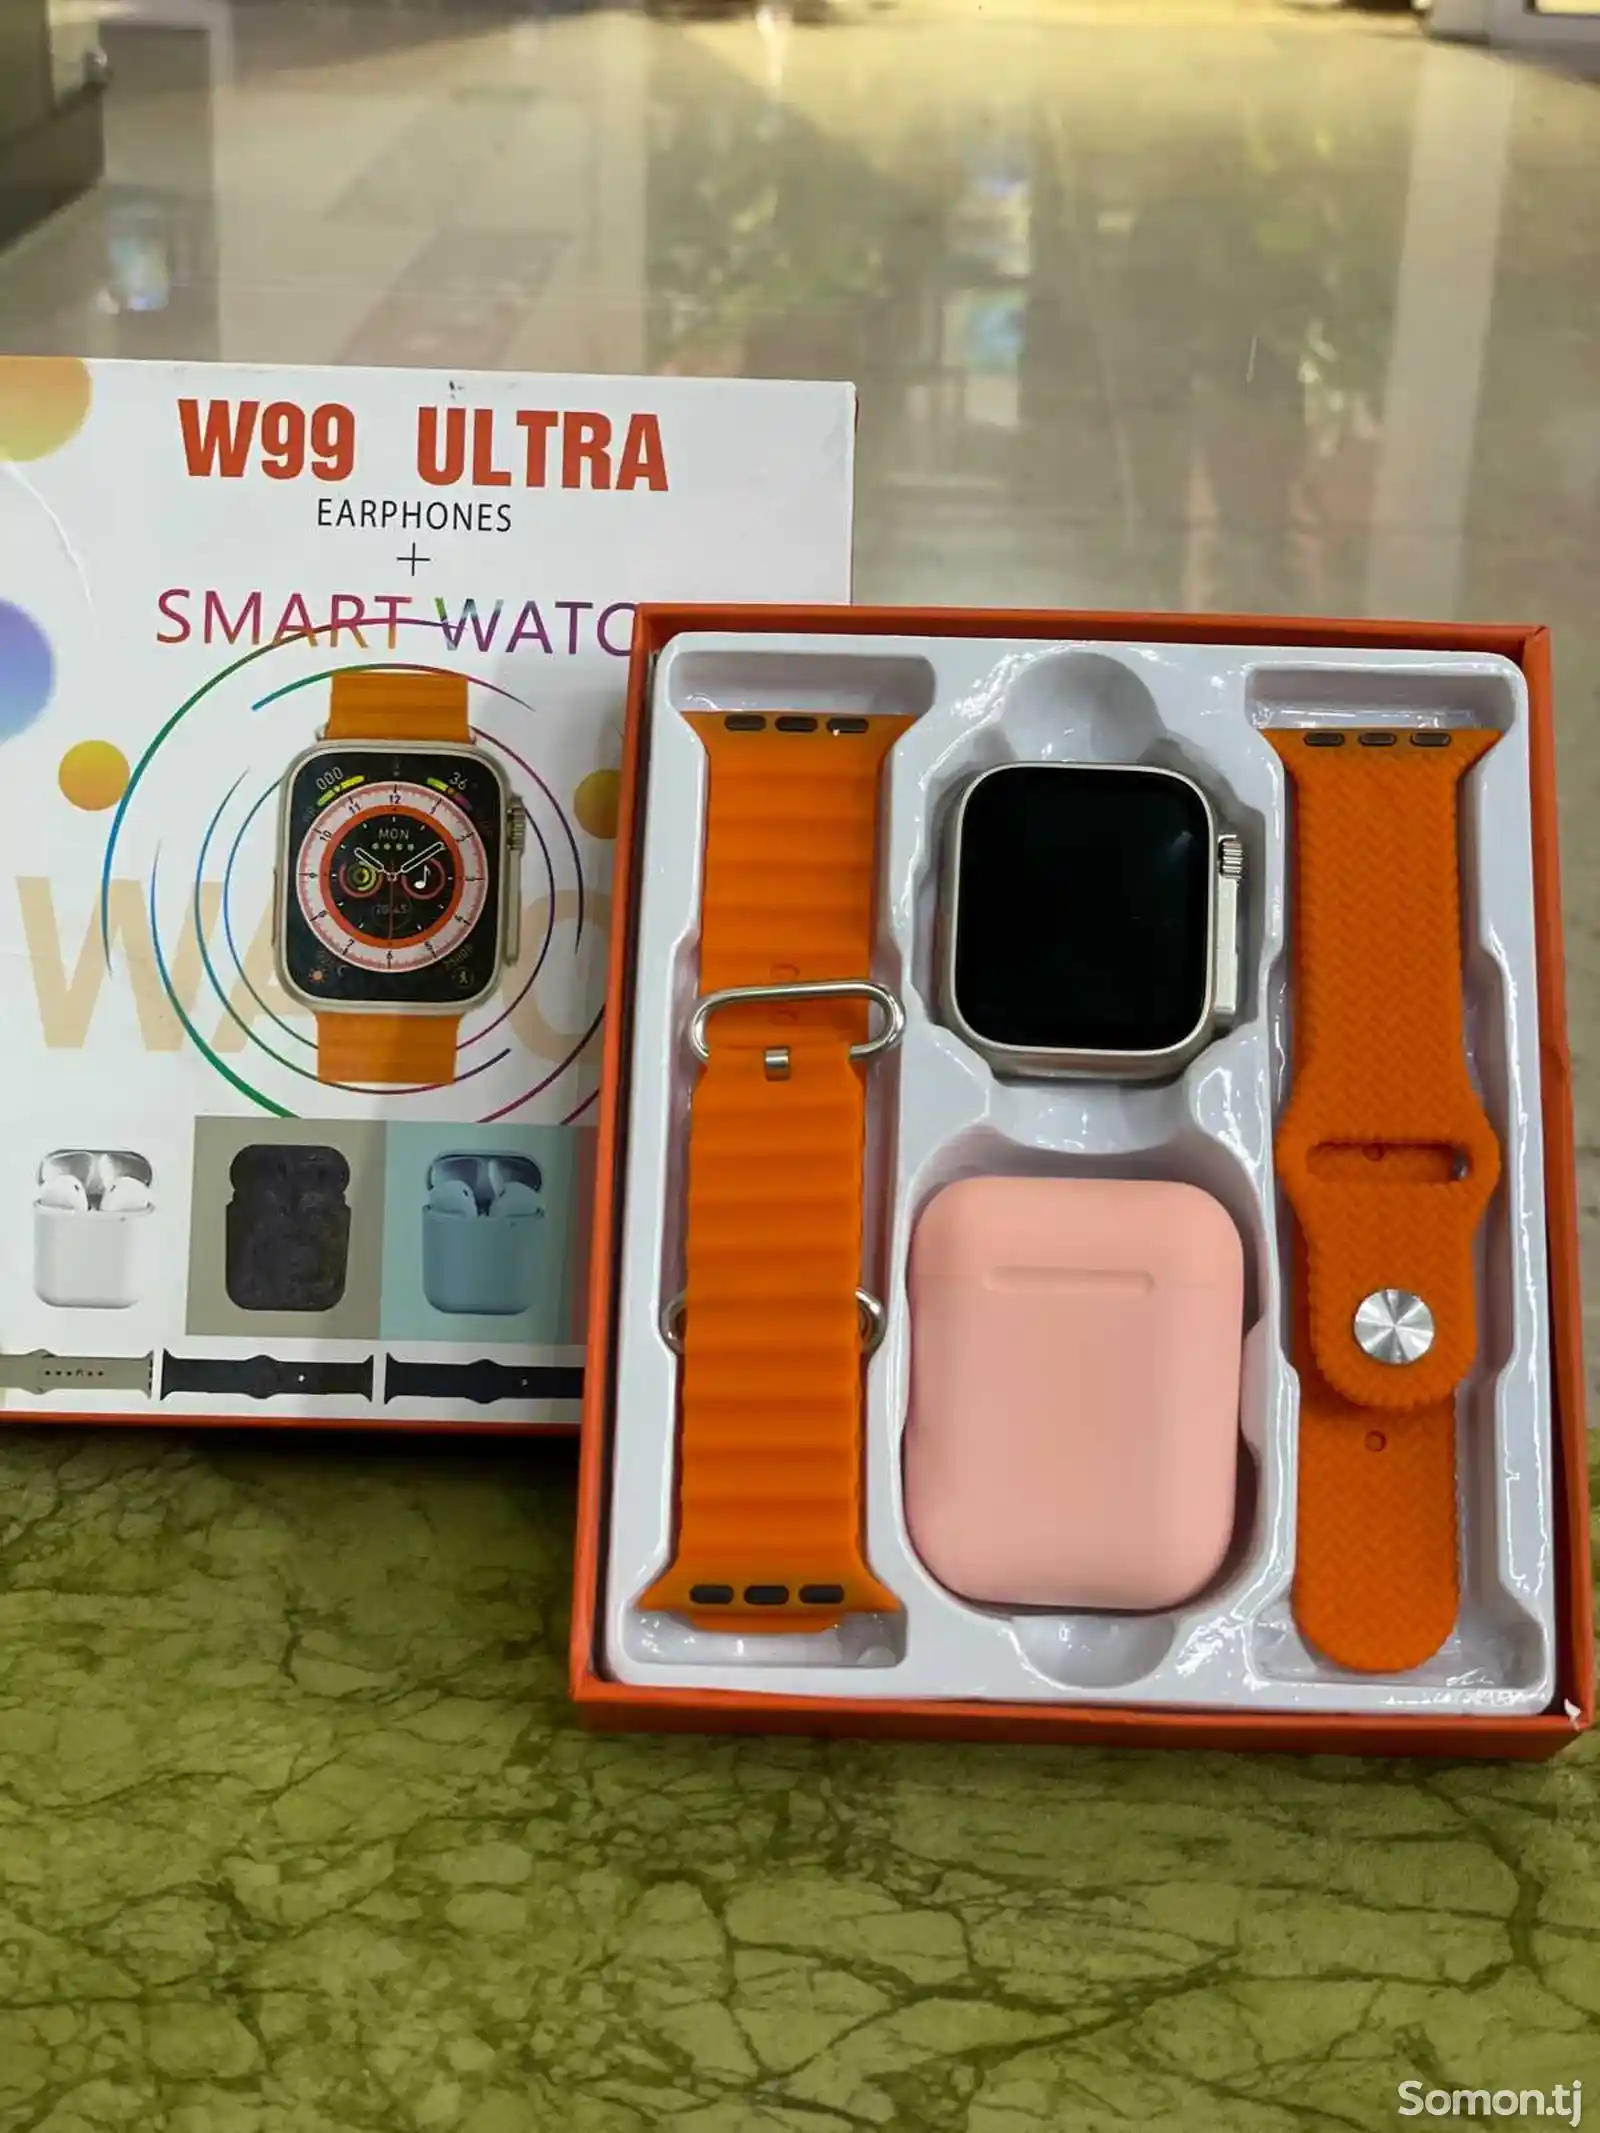 Комплект Смарт часы и наушники W99 Ultra-1